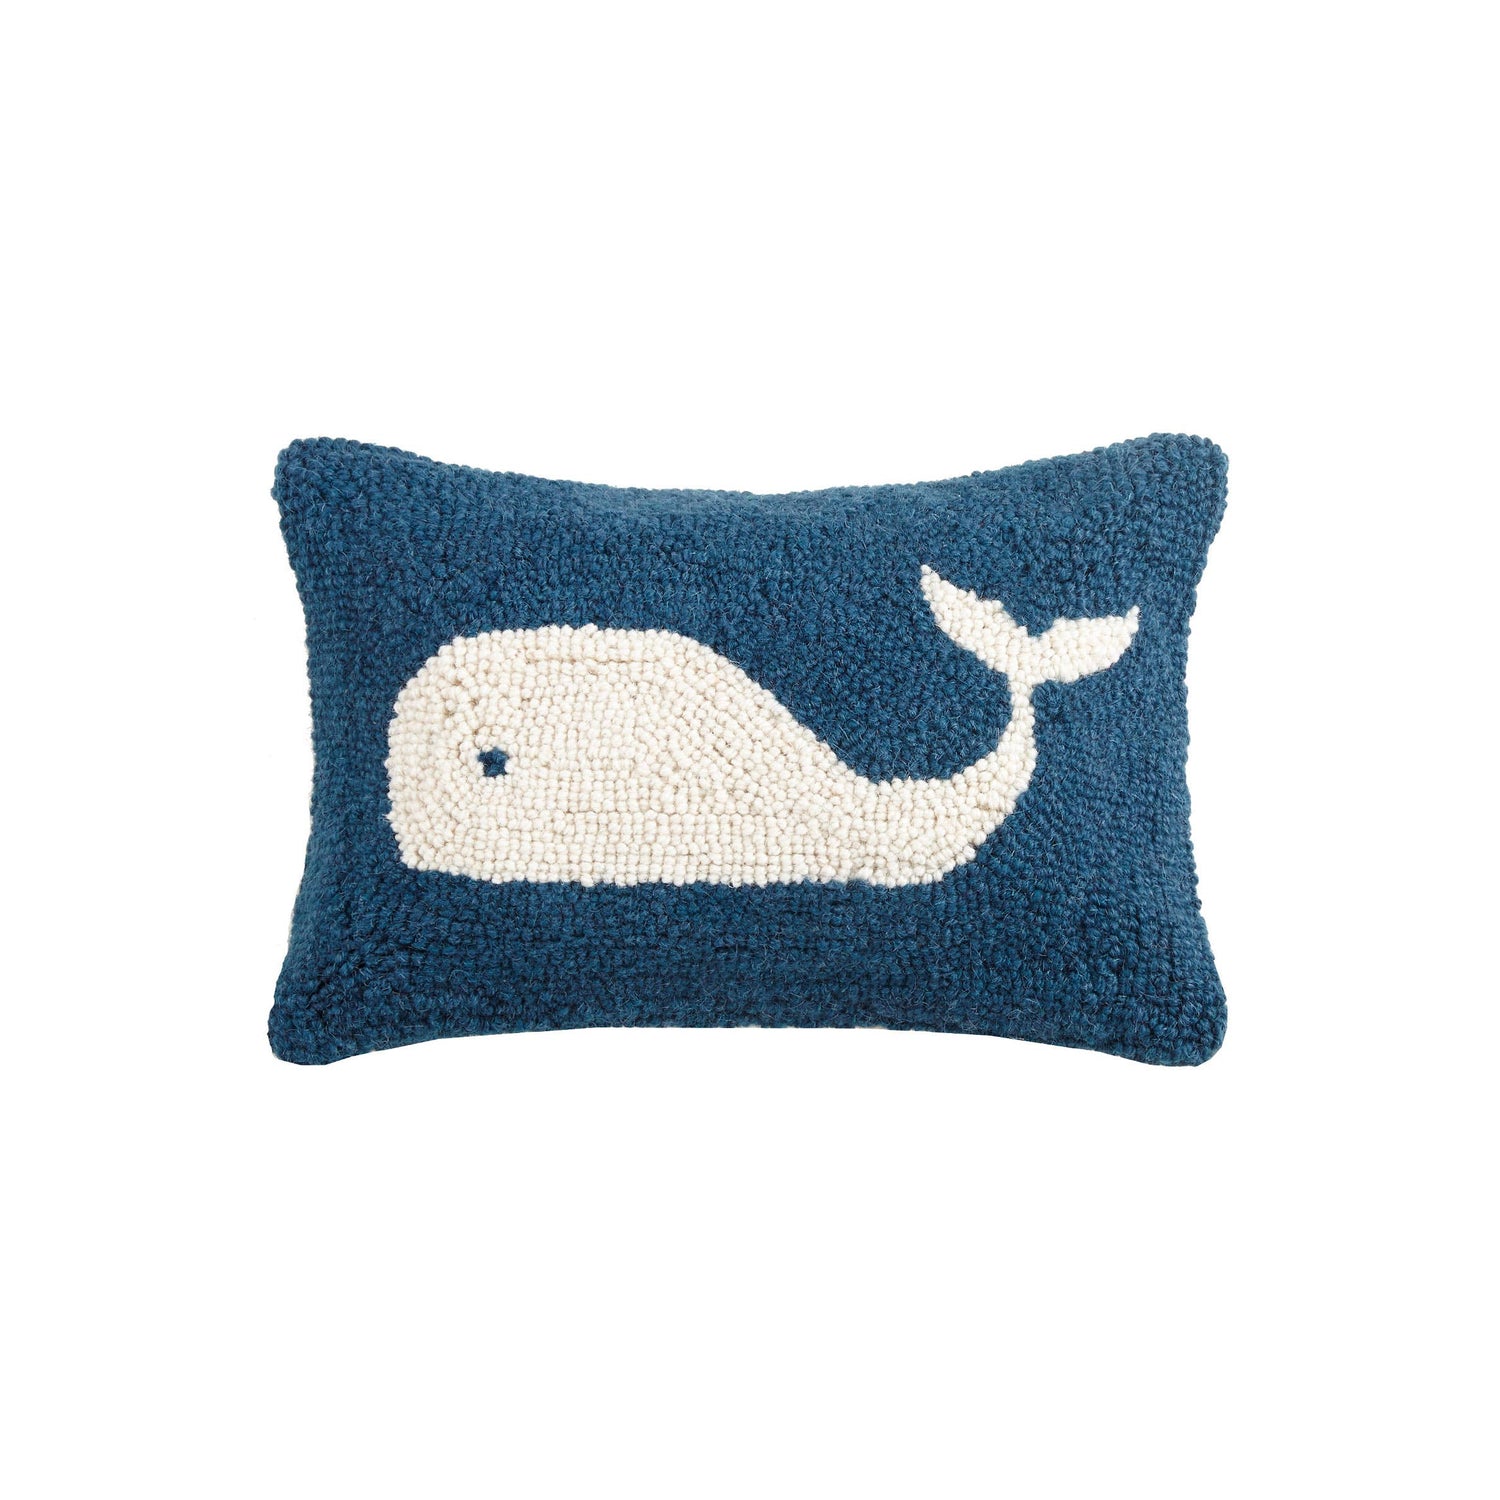 Peking Handicraft - Whale Hook Pillow